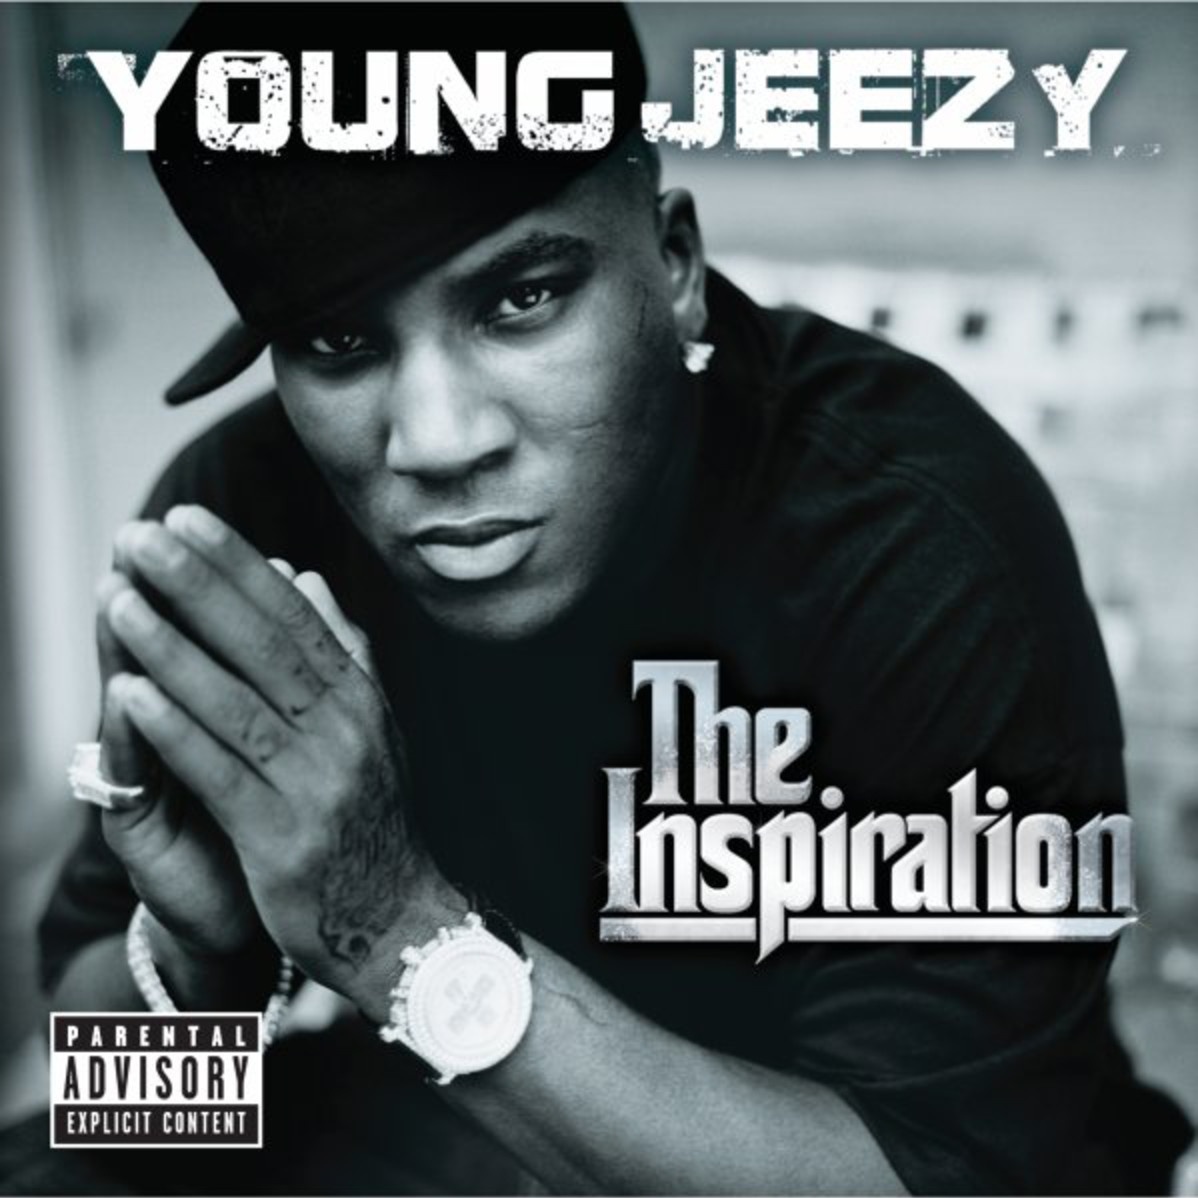 J.E.E.Z.Y. - Album Version (Edited)